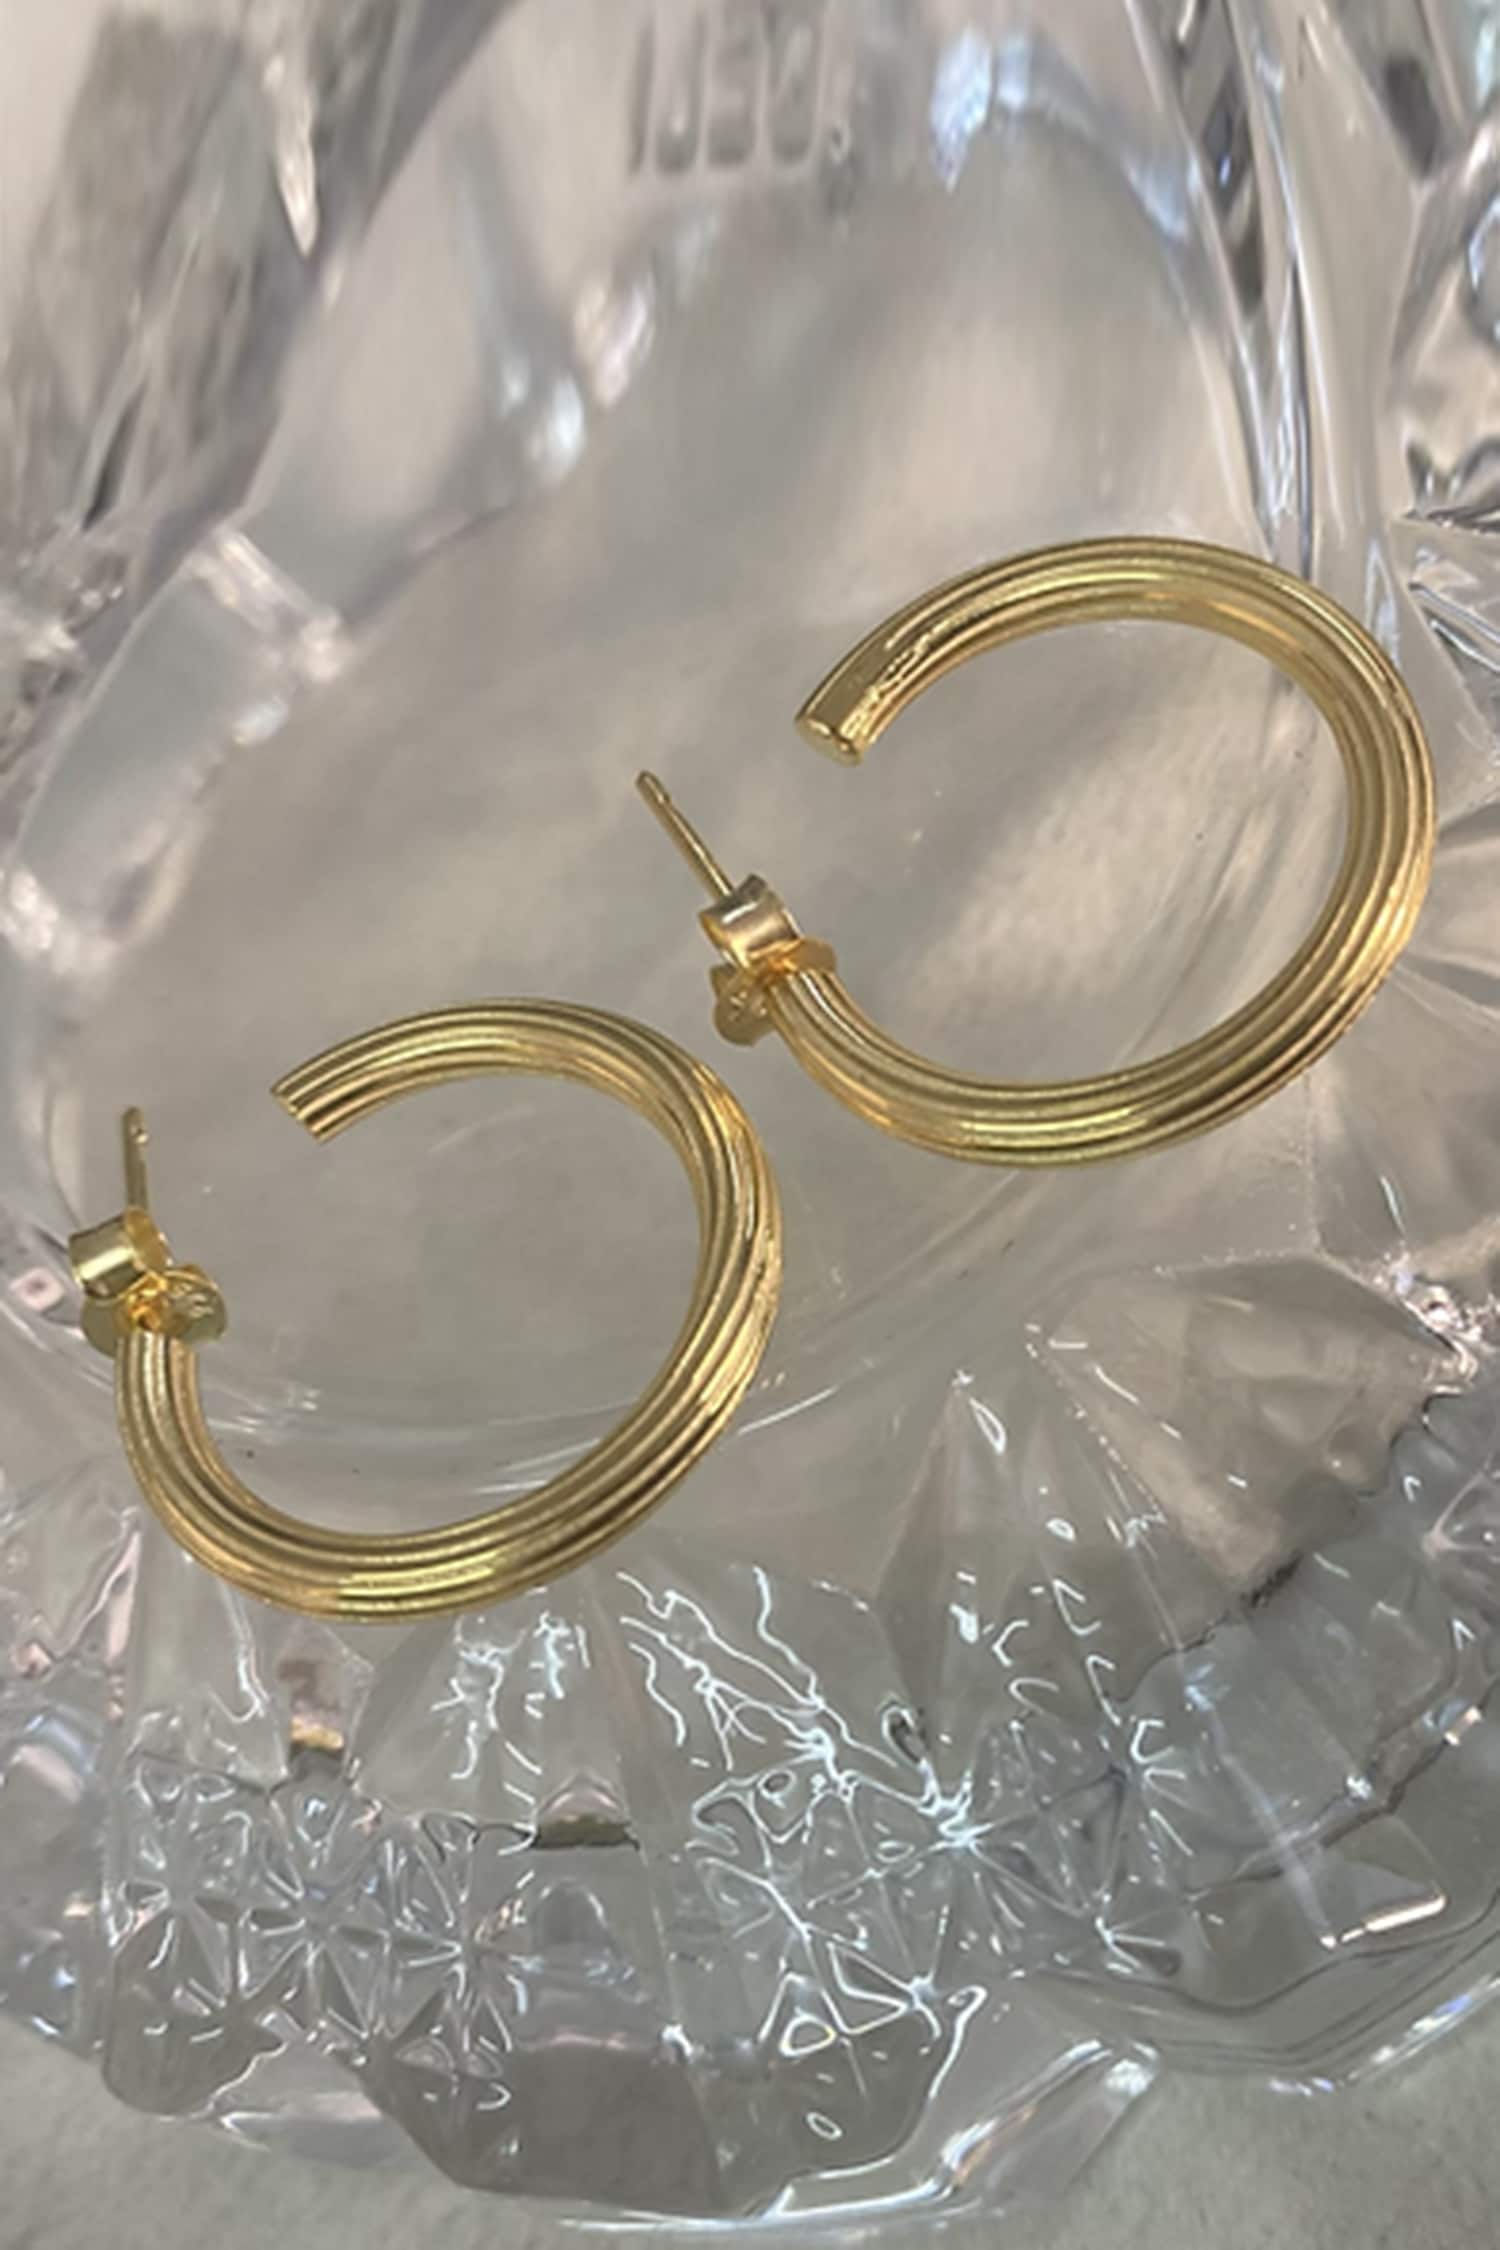 Buy Vintage 14k Yellow Gold Half Pair Hoop Earring Online in India - Etsy